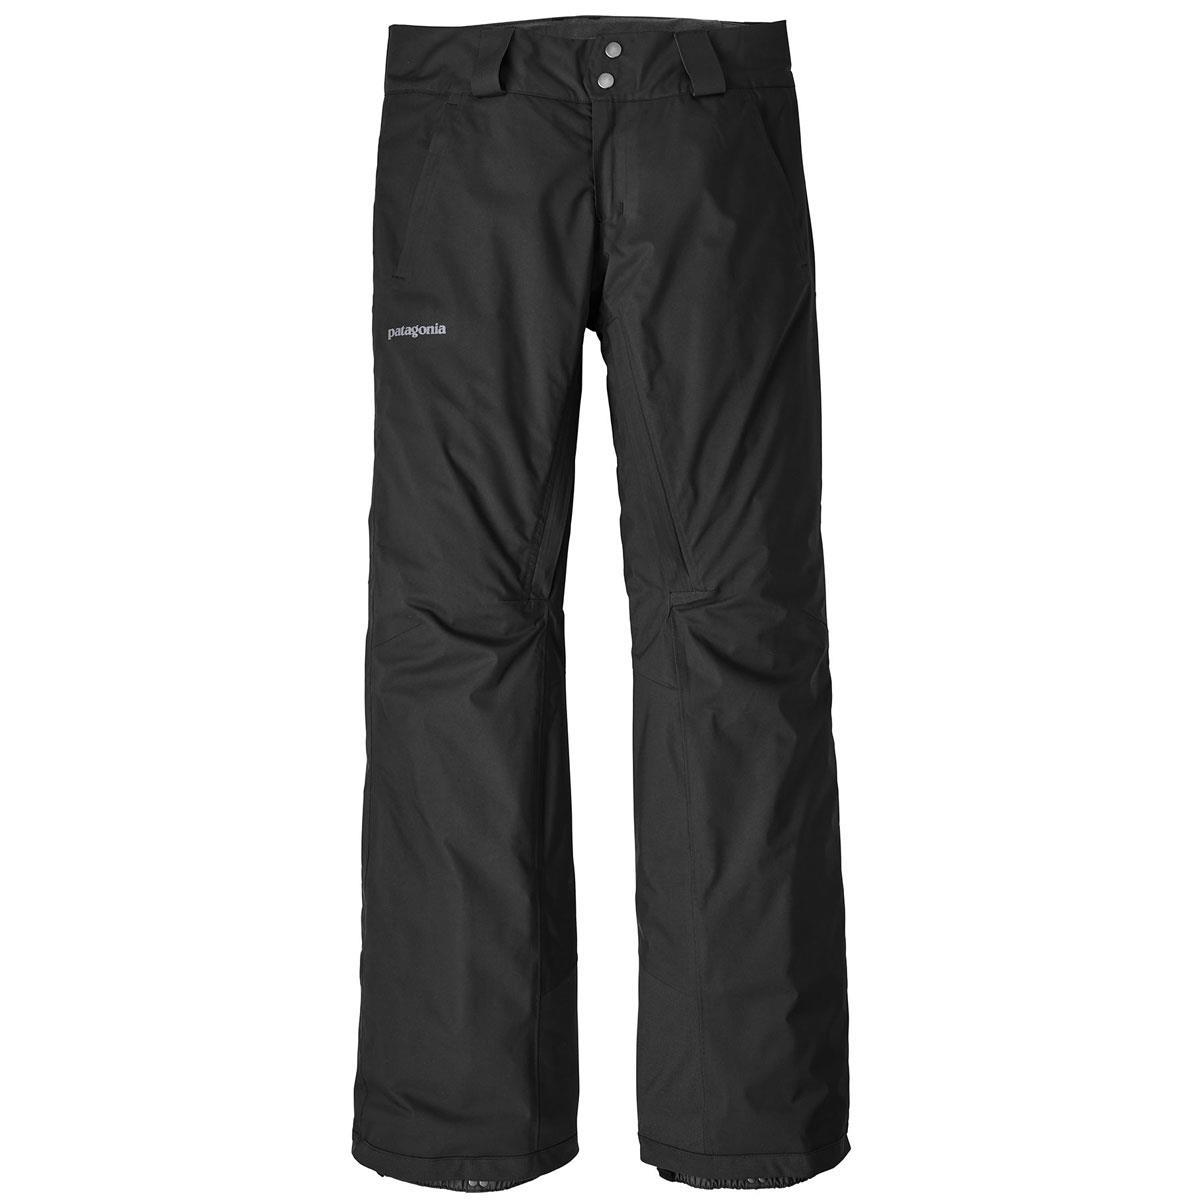 Patagonia Side Pocket Pants